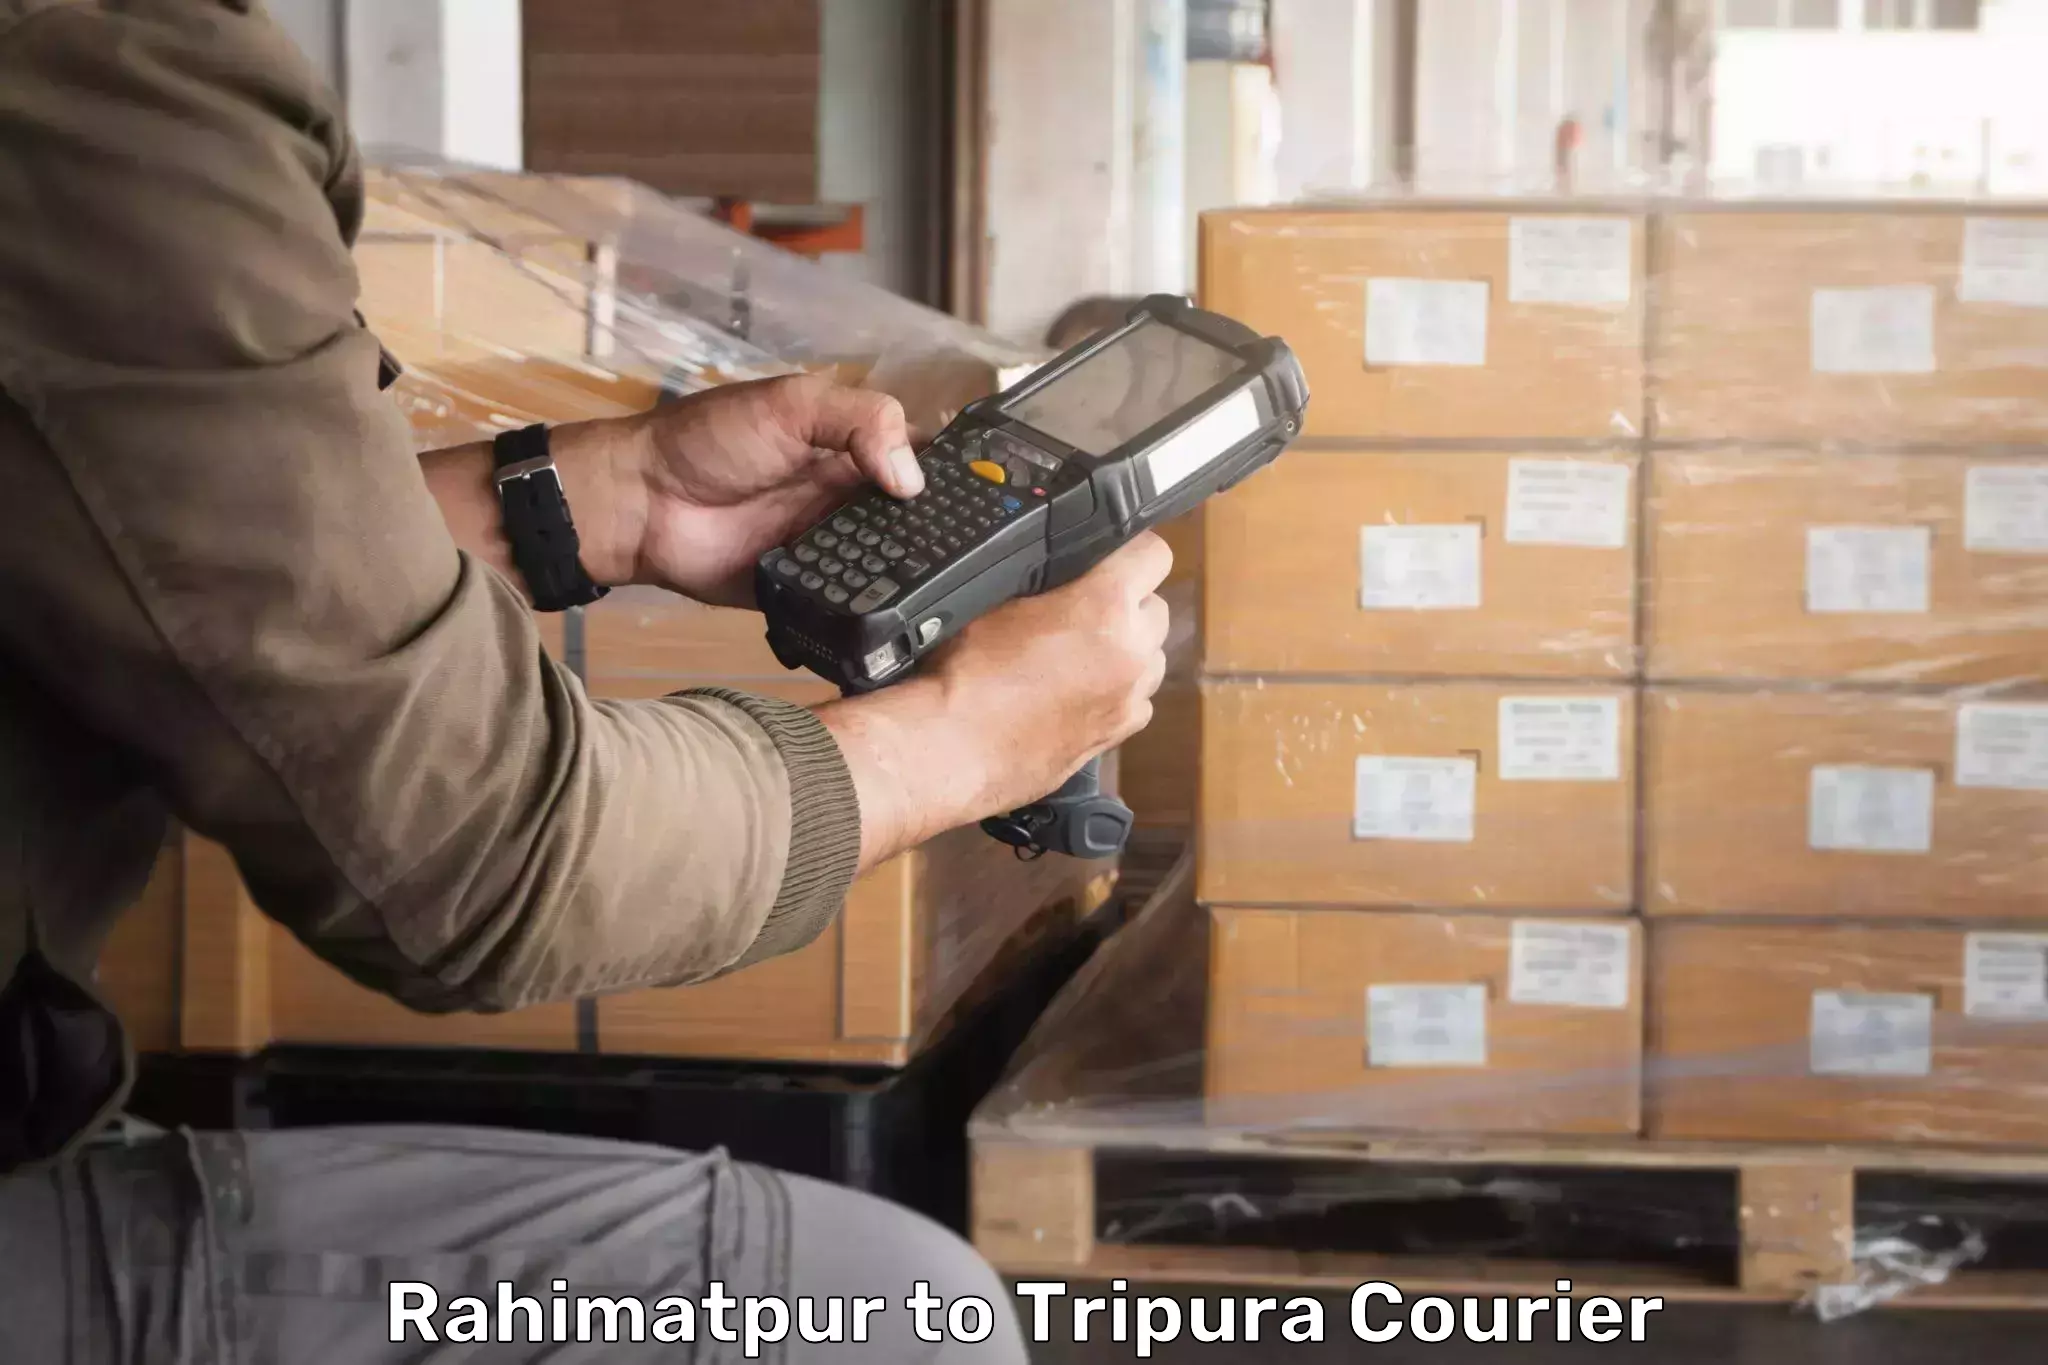 Efficient logistics management Rahimatpur to Tripura